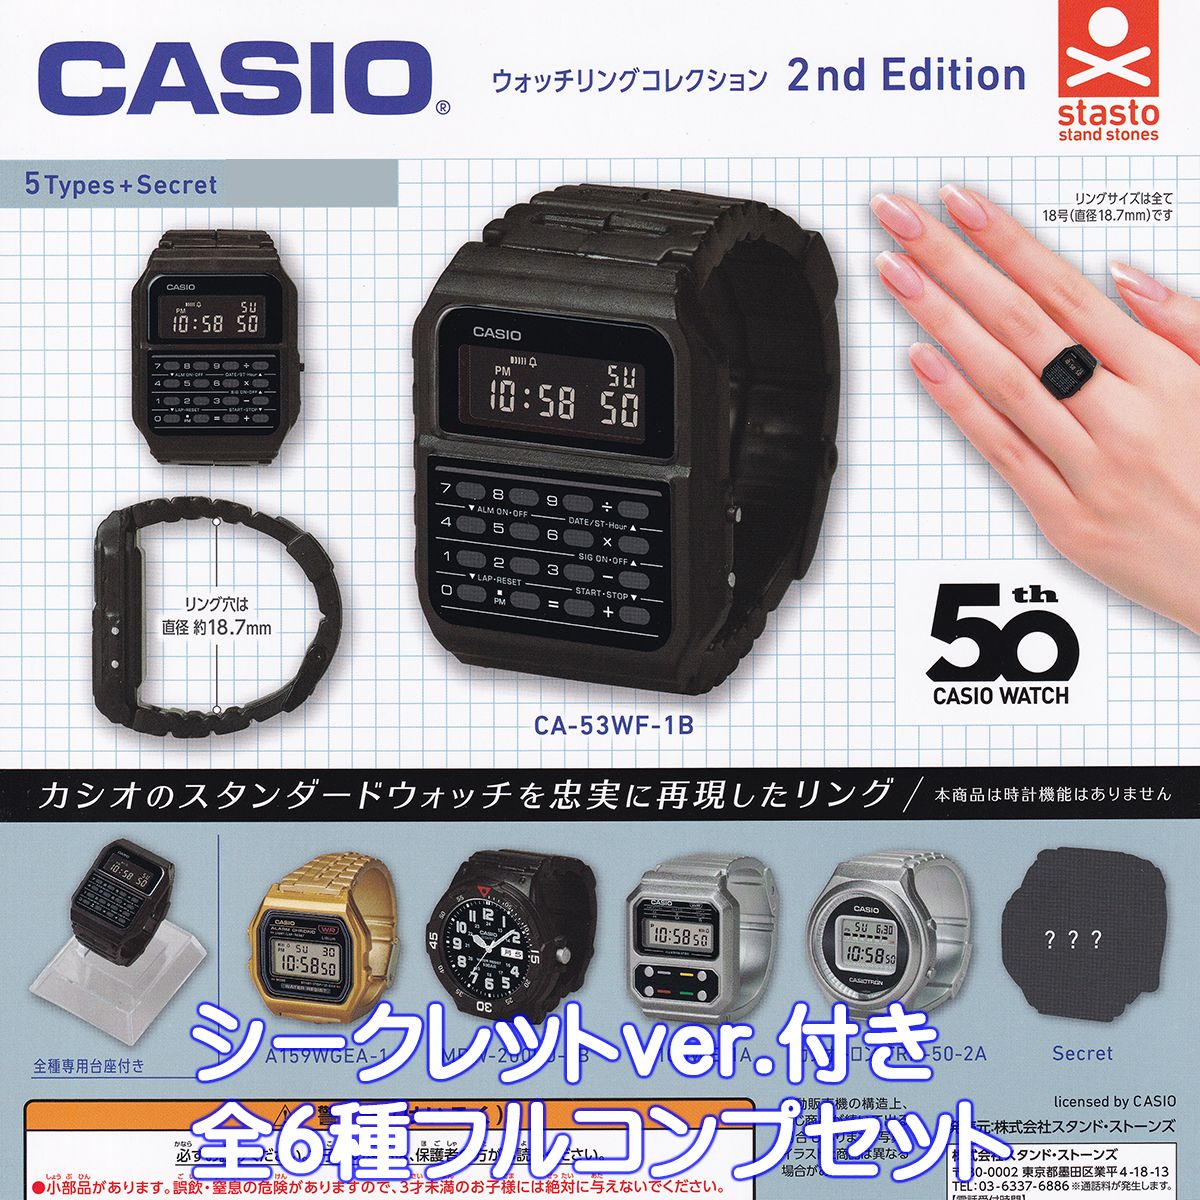 カシオ計算機株式会社の完全監修によるリング型ミニチュア腕時計「CASIOウォッチリングコレクション」第2弾が新登場です。 2024年、カシオ腕時計は発売50周年を迎え、今も尚、親子孫3世代からの圧倒的な大人気シリーズで、デジタル液晶表示、文字盤、ガラスの3層構造で(アナログ時計は2層)、カシオの腕時計を忠実に再現しました豪華仕様です。 ＜商品のラインナップ＞ CA-53WF-1B A159WGEA-1 MRW-200HJ-1B A100WE-1A カシオトロン TRN-50-2A シークレット (G-SHOCK) 以上、シークレットバージョン付き全6種フルコンプセットです。 （上記の通り6種類、全て揃っています） 商品の状態は、新品・種類確認のみです。 冊子（ミニブック）など付属致します。 商品名 : CASIOウォッチリングコレクション2ndEdition メーカー : スタンド・ストーンズ キャラクター : 模型 材質素材 本体 : ABS ガラス、台座 : PS シール : PET リングサイズ : 18号(直径約18.7mm) 分類 : ガチャガチャ ・ カプセルトイ ENGLISHNAME : CASIO WATCH RING COLLECTION 2ND EDITION STAND STONES CAPSULE TOY FIGURE KAWAII JANコード : 4589675715762 DATECODE ： 20240419 SHIPPINGCODE : COMPACT licensed by CASIO (外側カプセルを省く場合があります) (腕時計をモチーフにしたミニチュア玩具で時計電卓などの機能はありません) IDコード : 96989 ■ミニチュアのラインナップへ